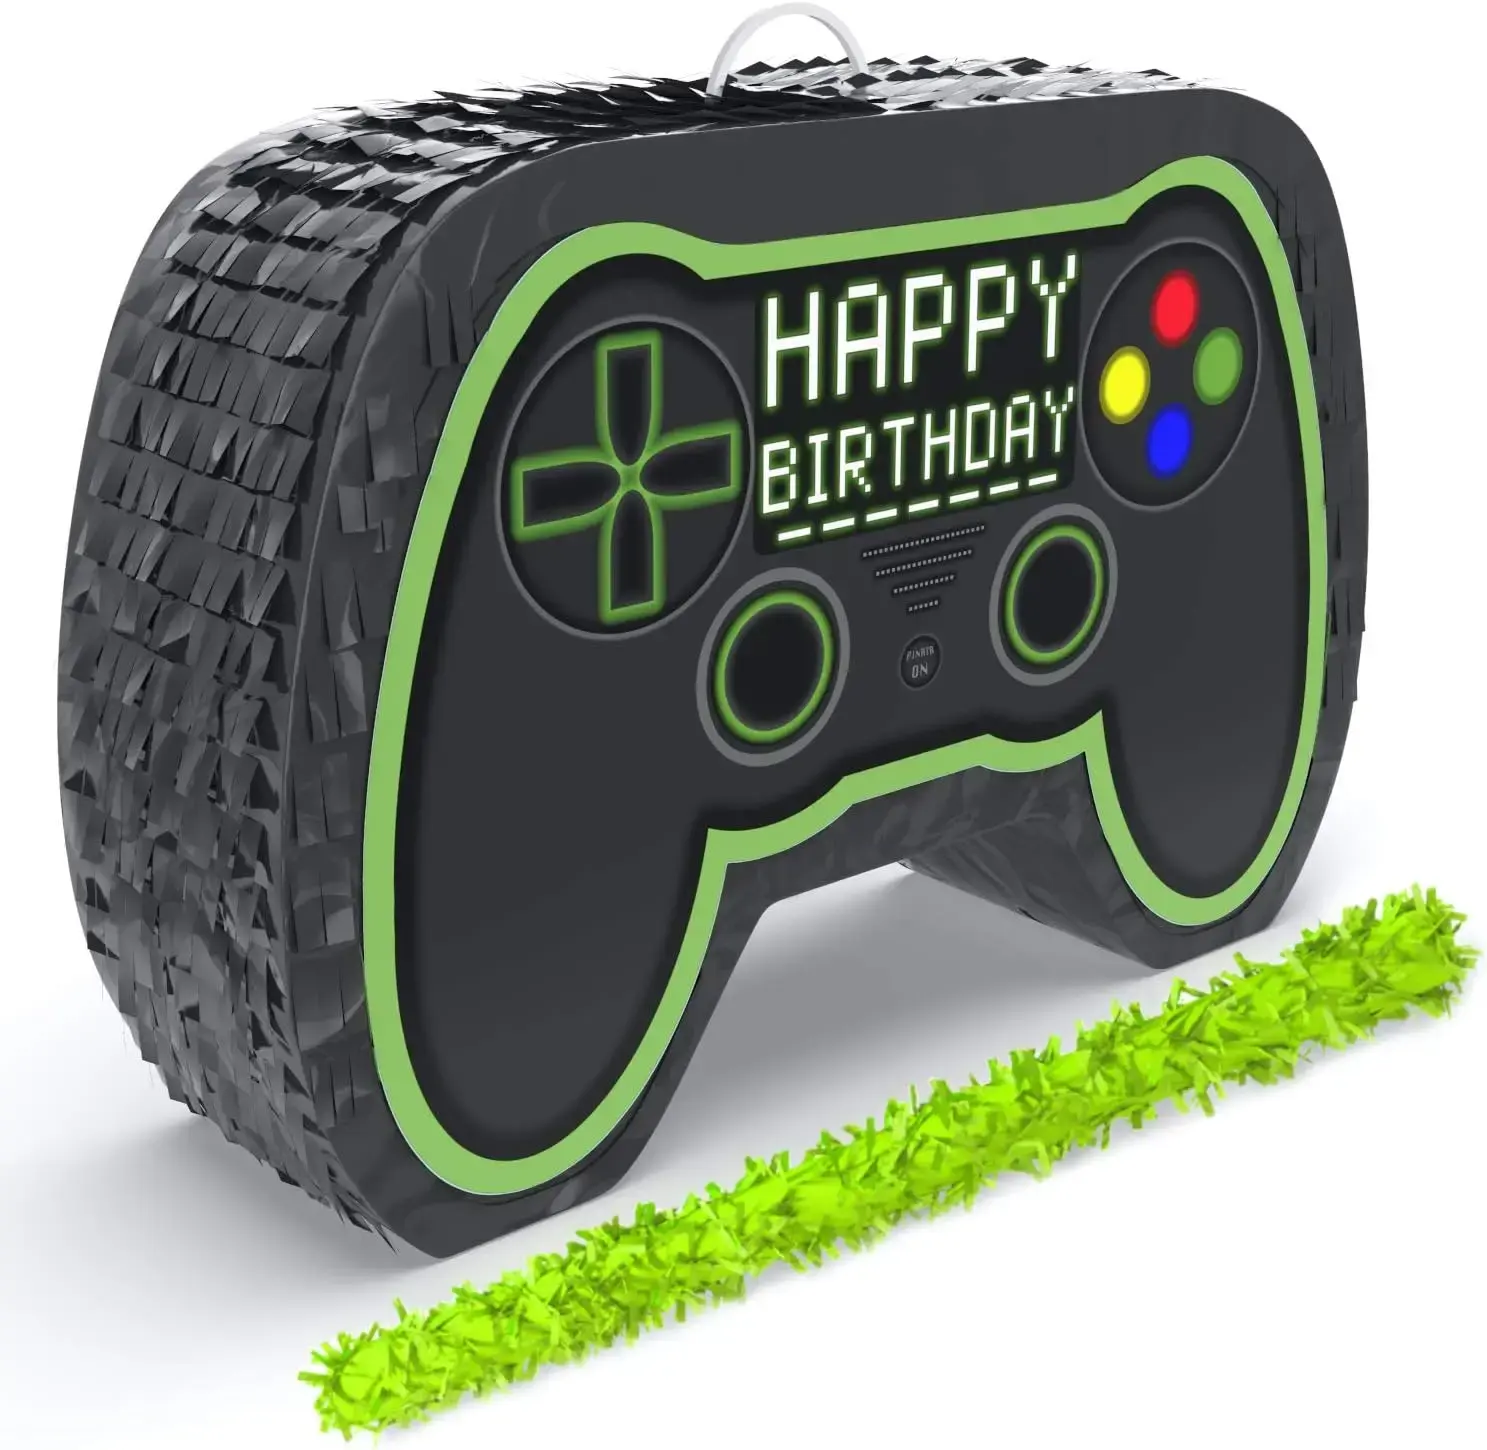 Özel Video oyunu denetleyici Pinatas paketi ile körü körüne ve yarasa erkek çocuklar için doğum günü partisi dekorasyon seti